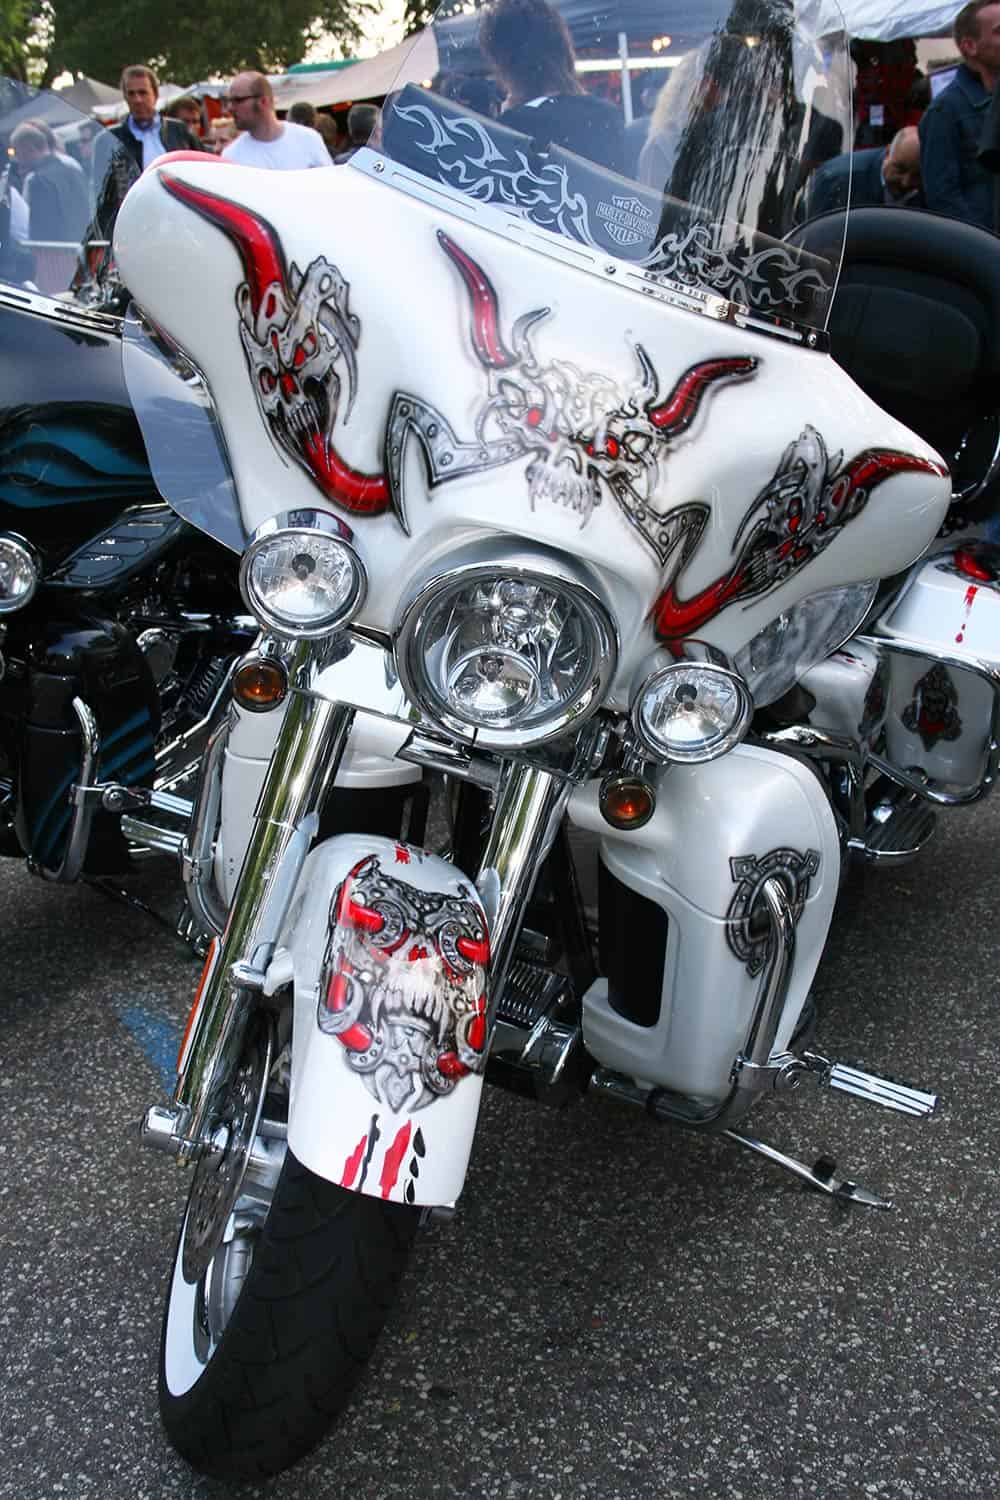 Bike Shows und Messen bieten ausreichend Platz um die eigene Harley-Davidson zu präsentieren